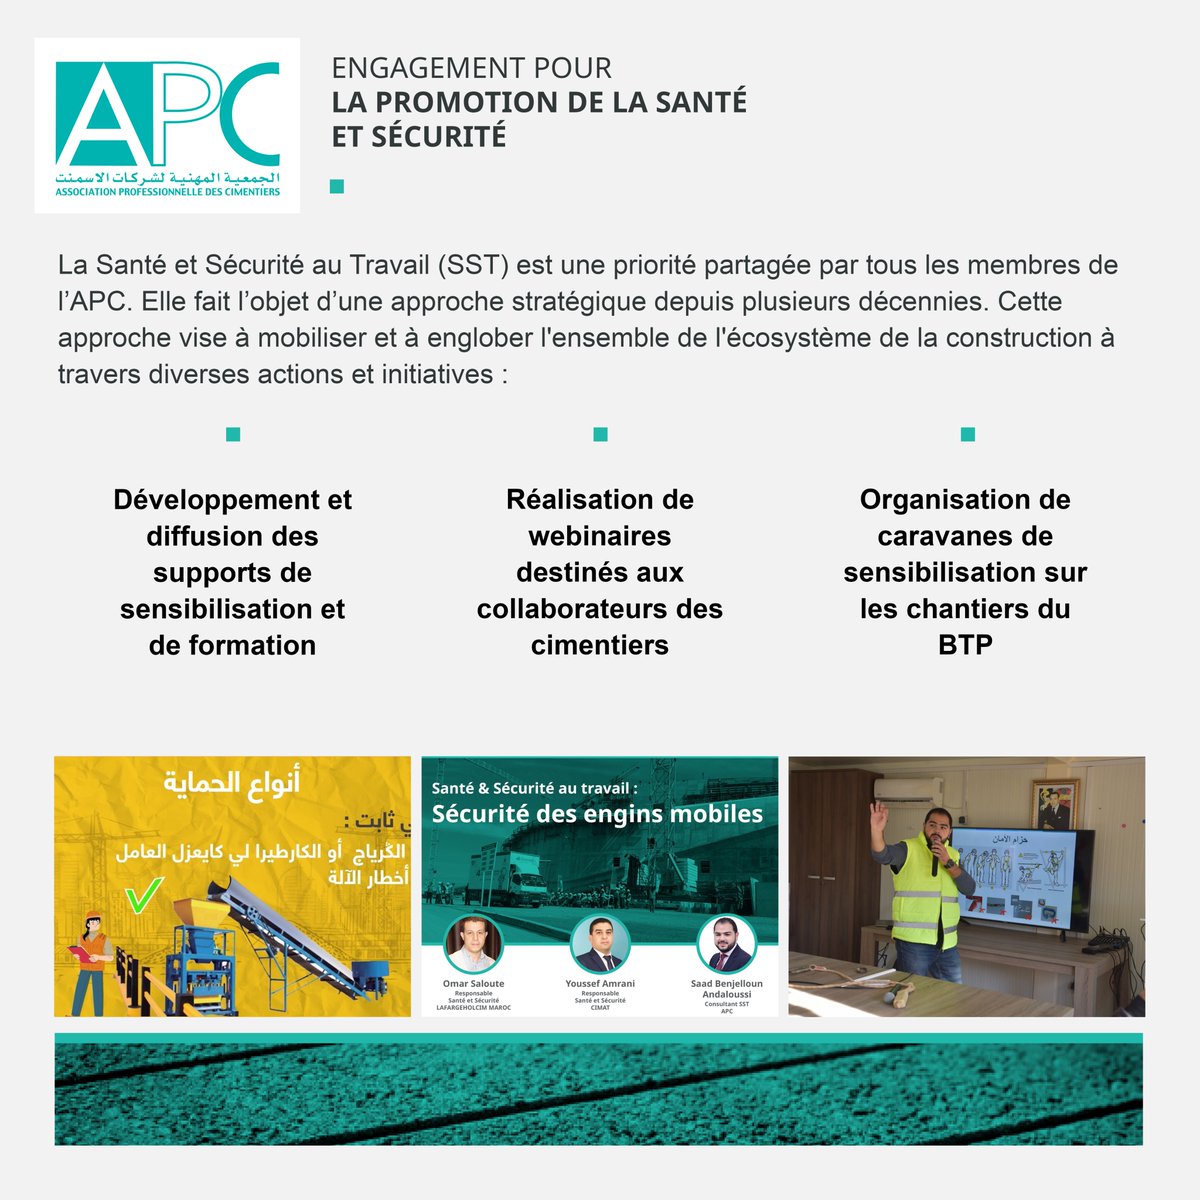 #HealthSafetyDay
En cette Journée mondiale de la #Santé & #Sécurité au Travail, les #cimentiers membres de l'#APCMaroc renouvellent leur engagement pour un environnement de travail sûr & sécurisé pour tous les collaborateurs et partenaires, ainsi que dans la promotion de la #SST.